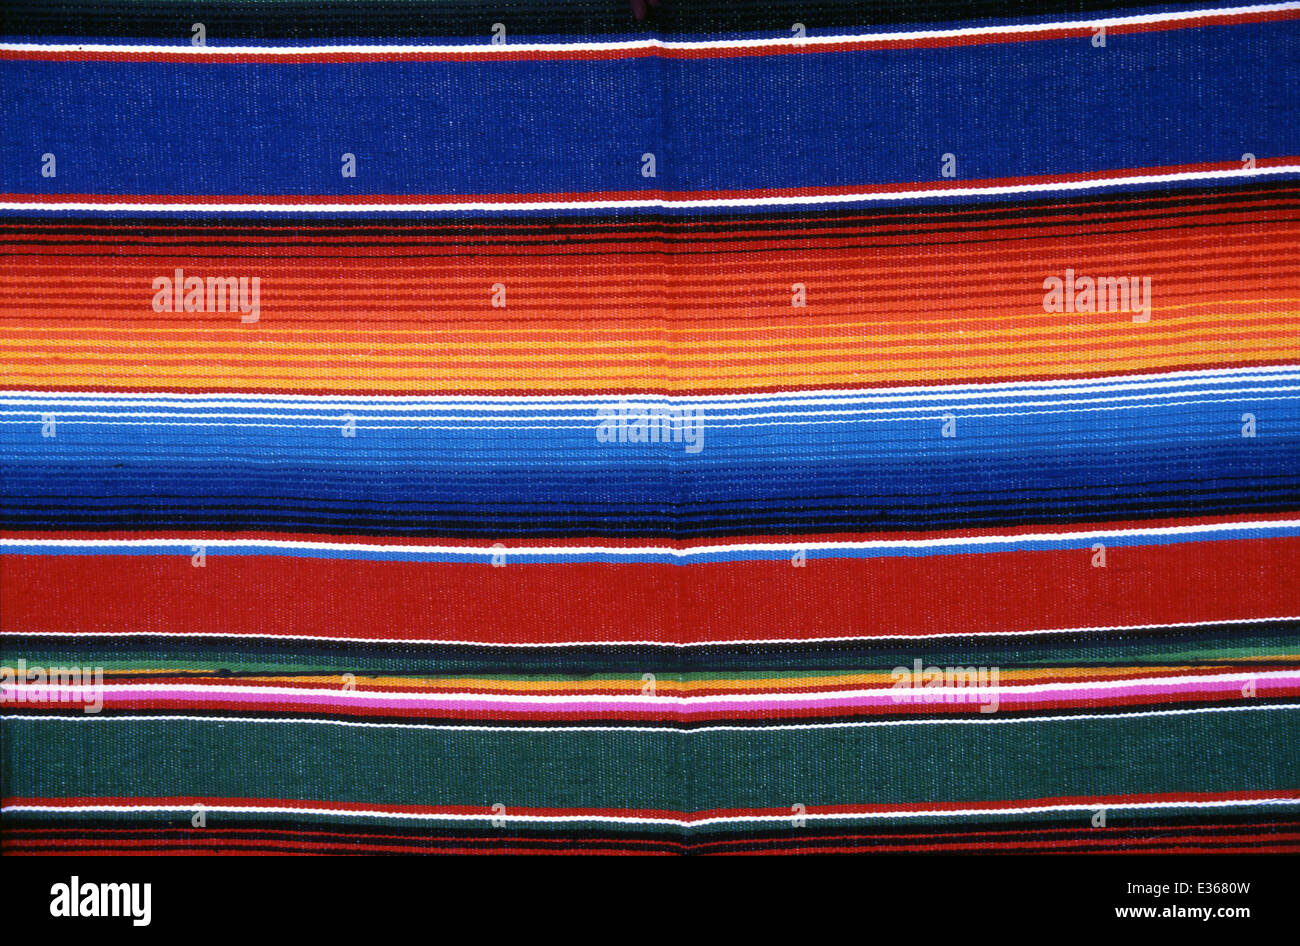 Messico Oaxaca, textils Foto Stock